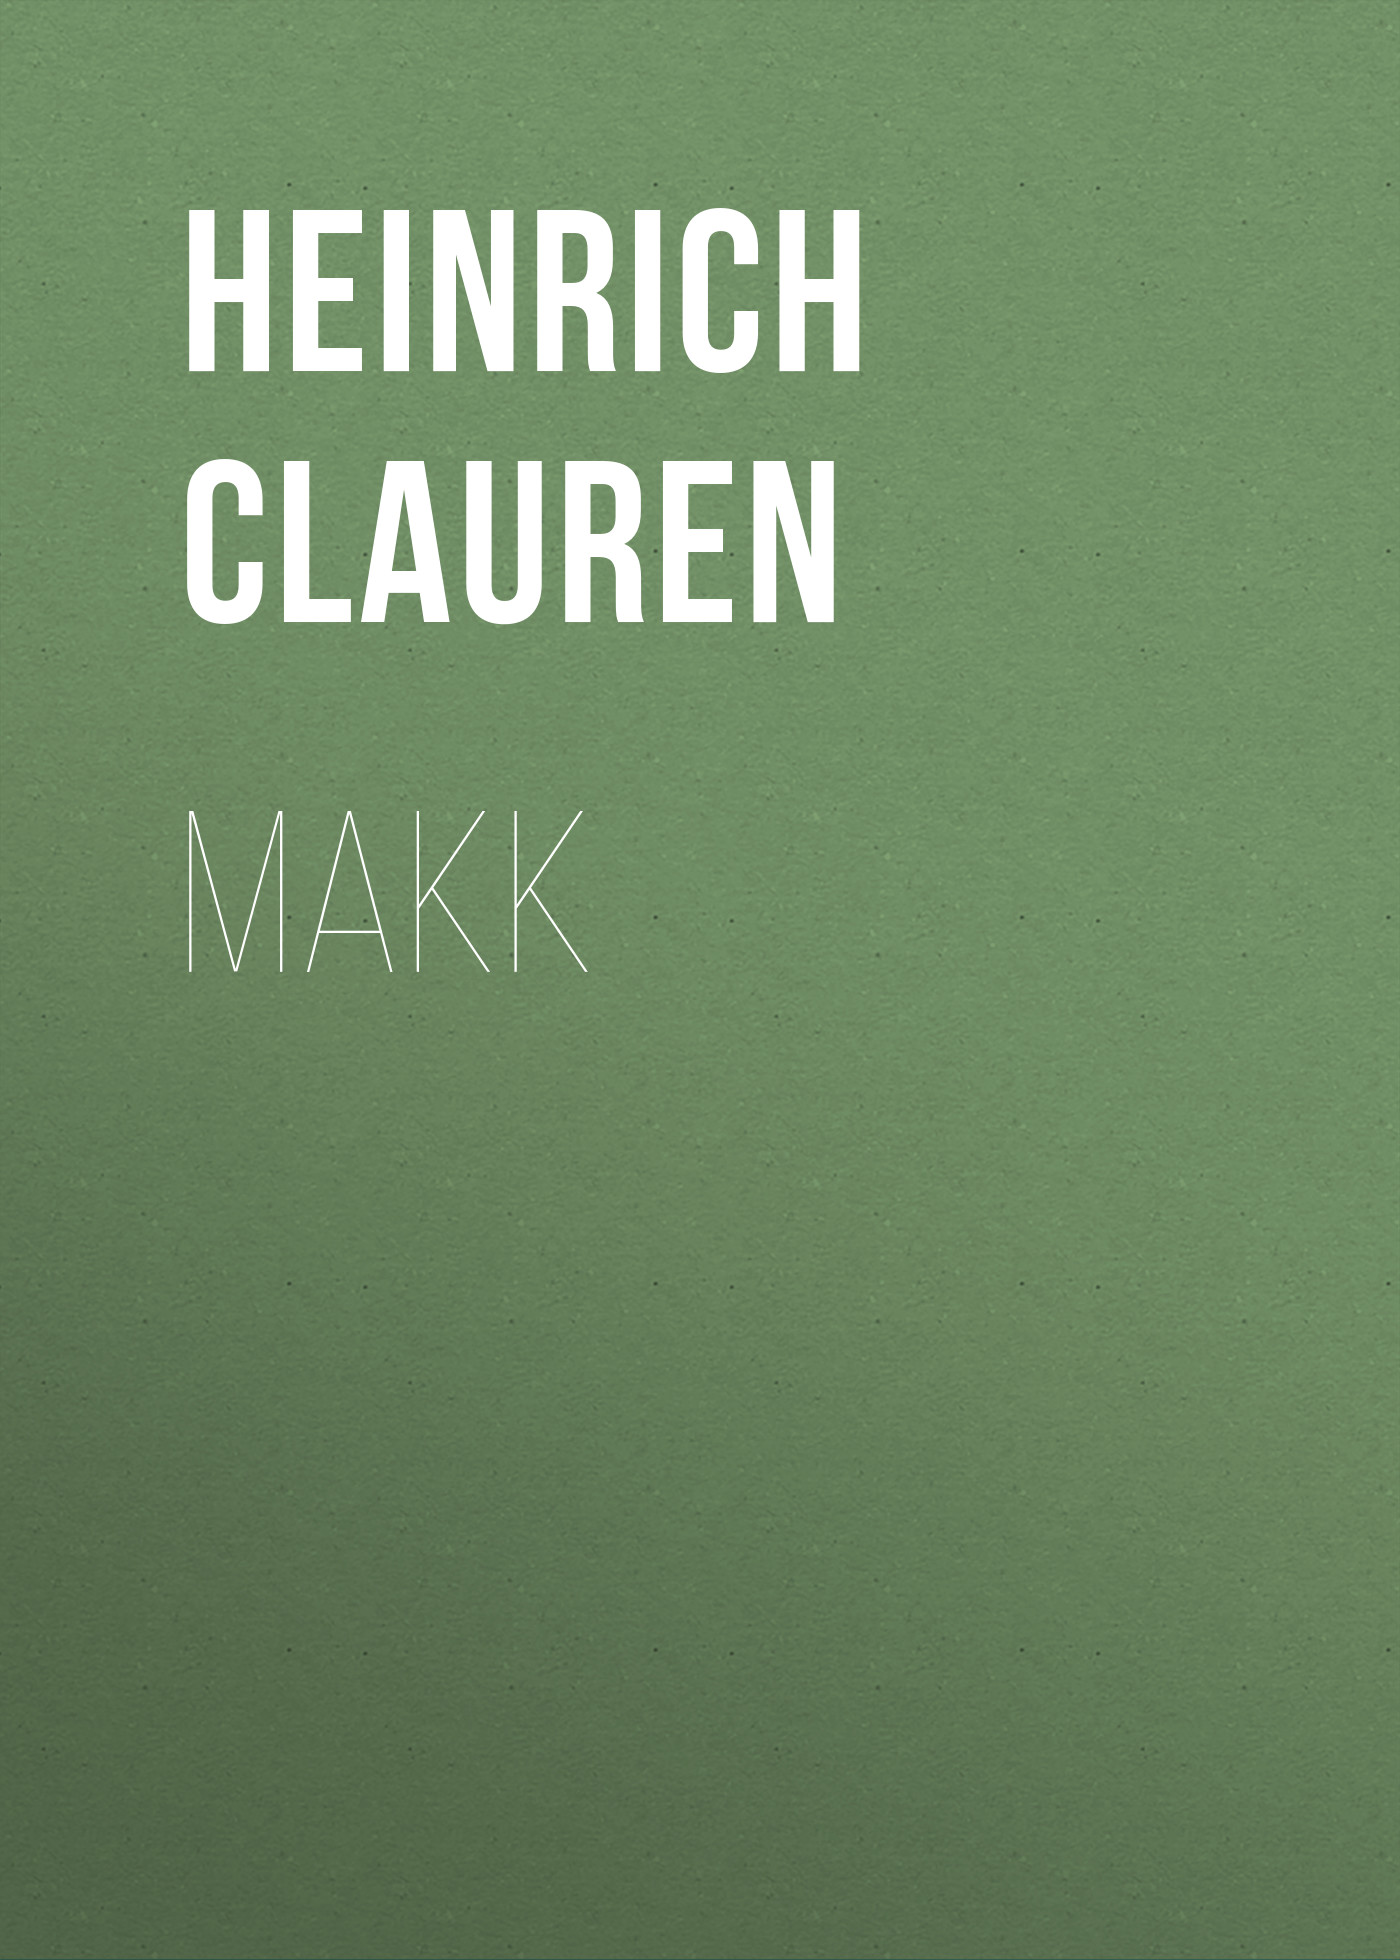 Книга Makk из серии , созданная Heinrich Clauren, может относится к жанру Зарубежная классика. Стоимость электронной книги Makk с идентификатором 48633404 составляет 0 руб.